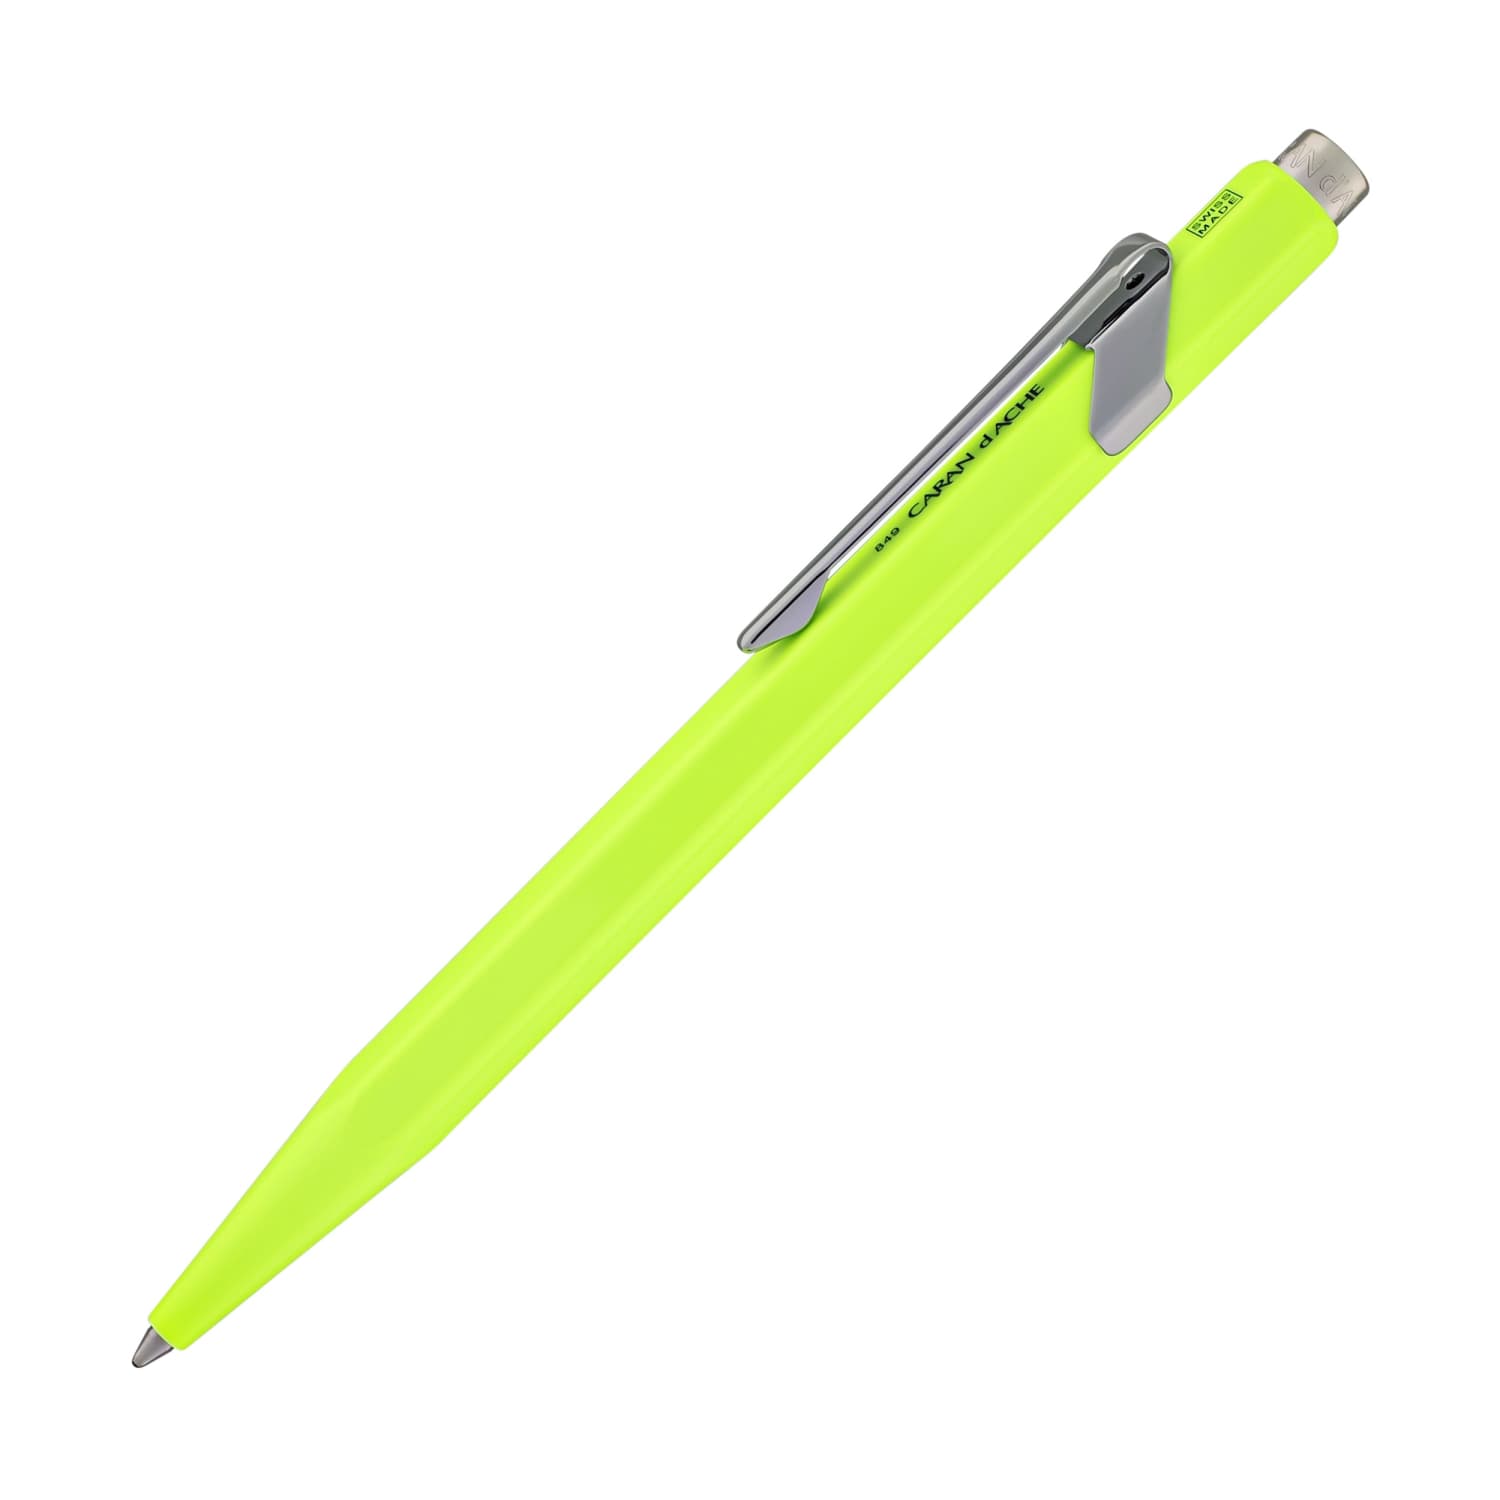 Caran d'Ache 849 Metal Ballpoint Pen in Fluorescent Yellow